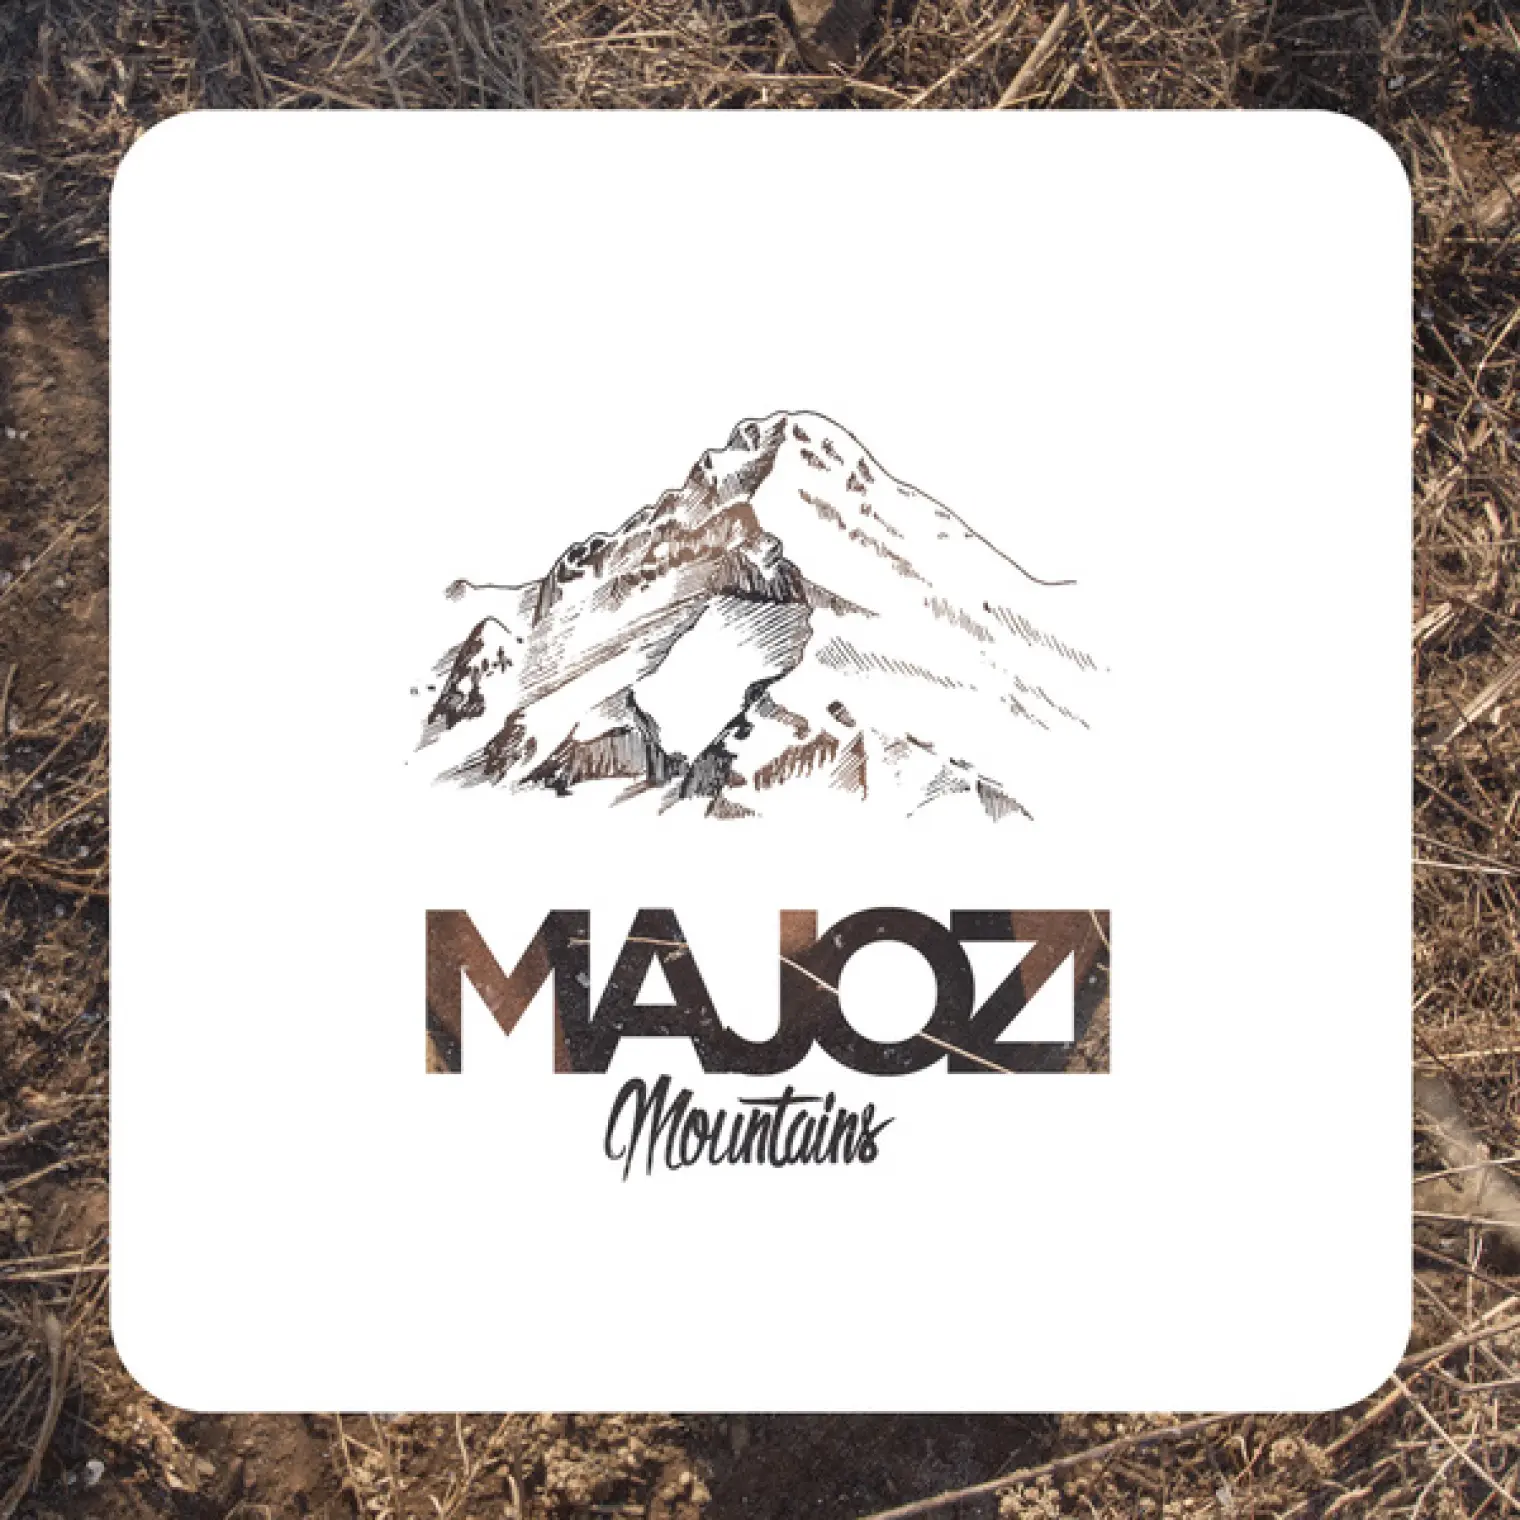 Mountains -  Majozi 